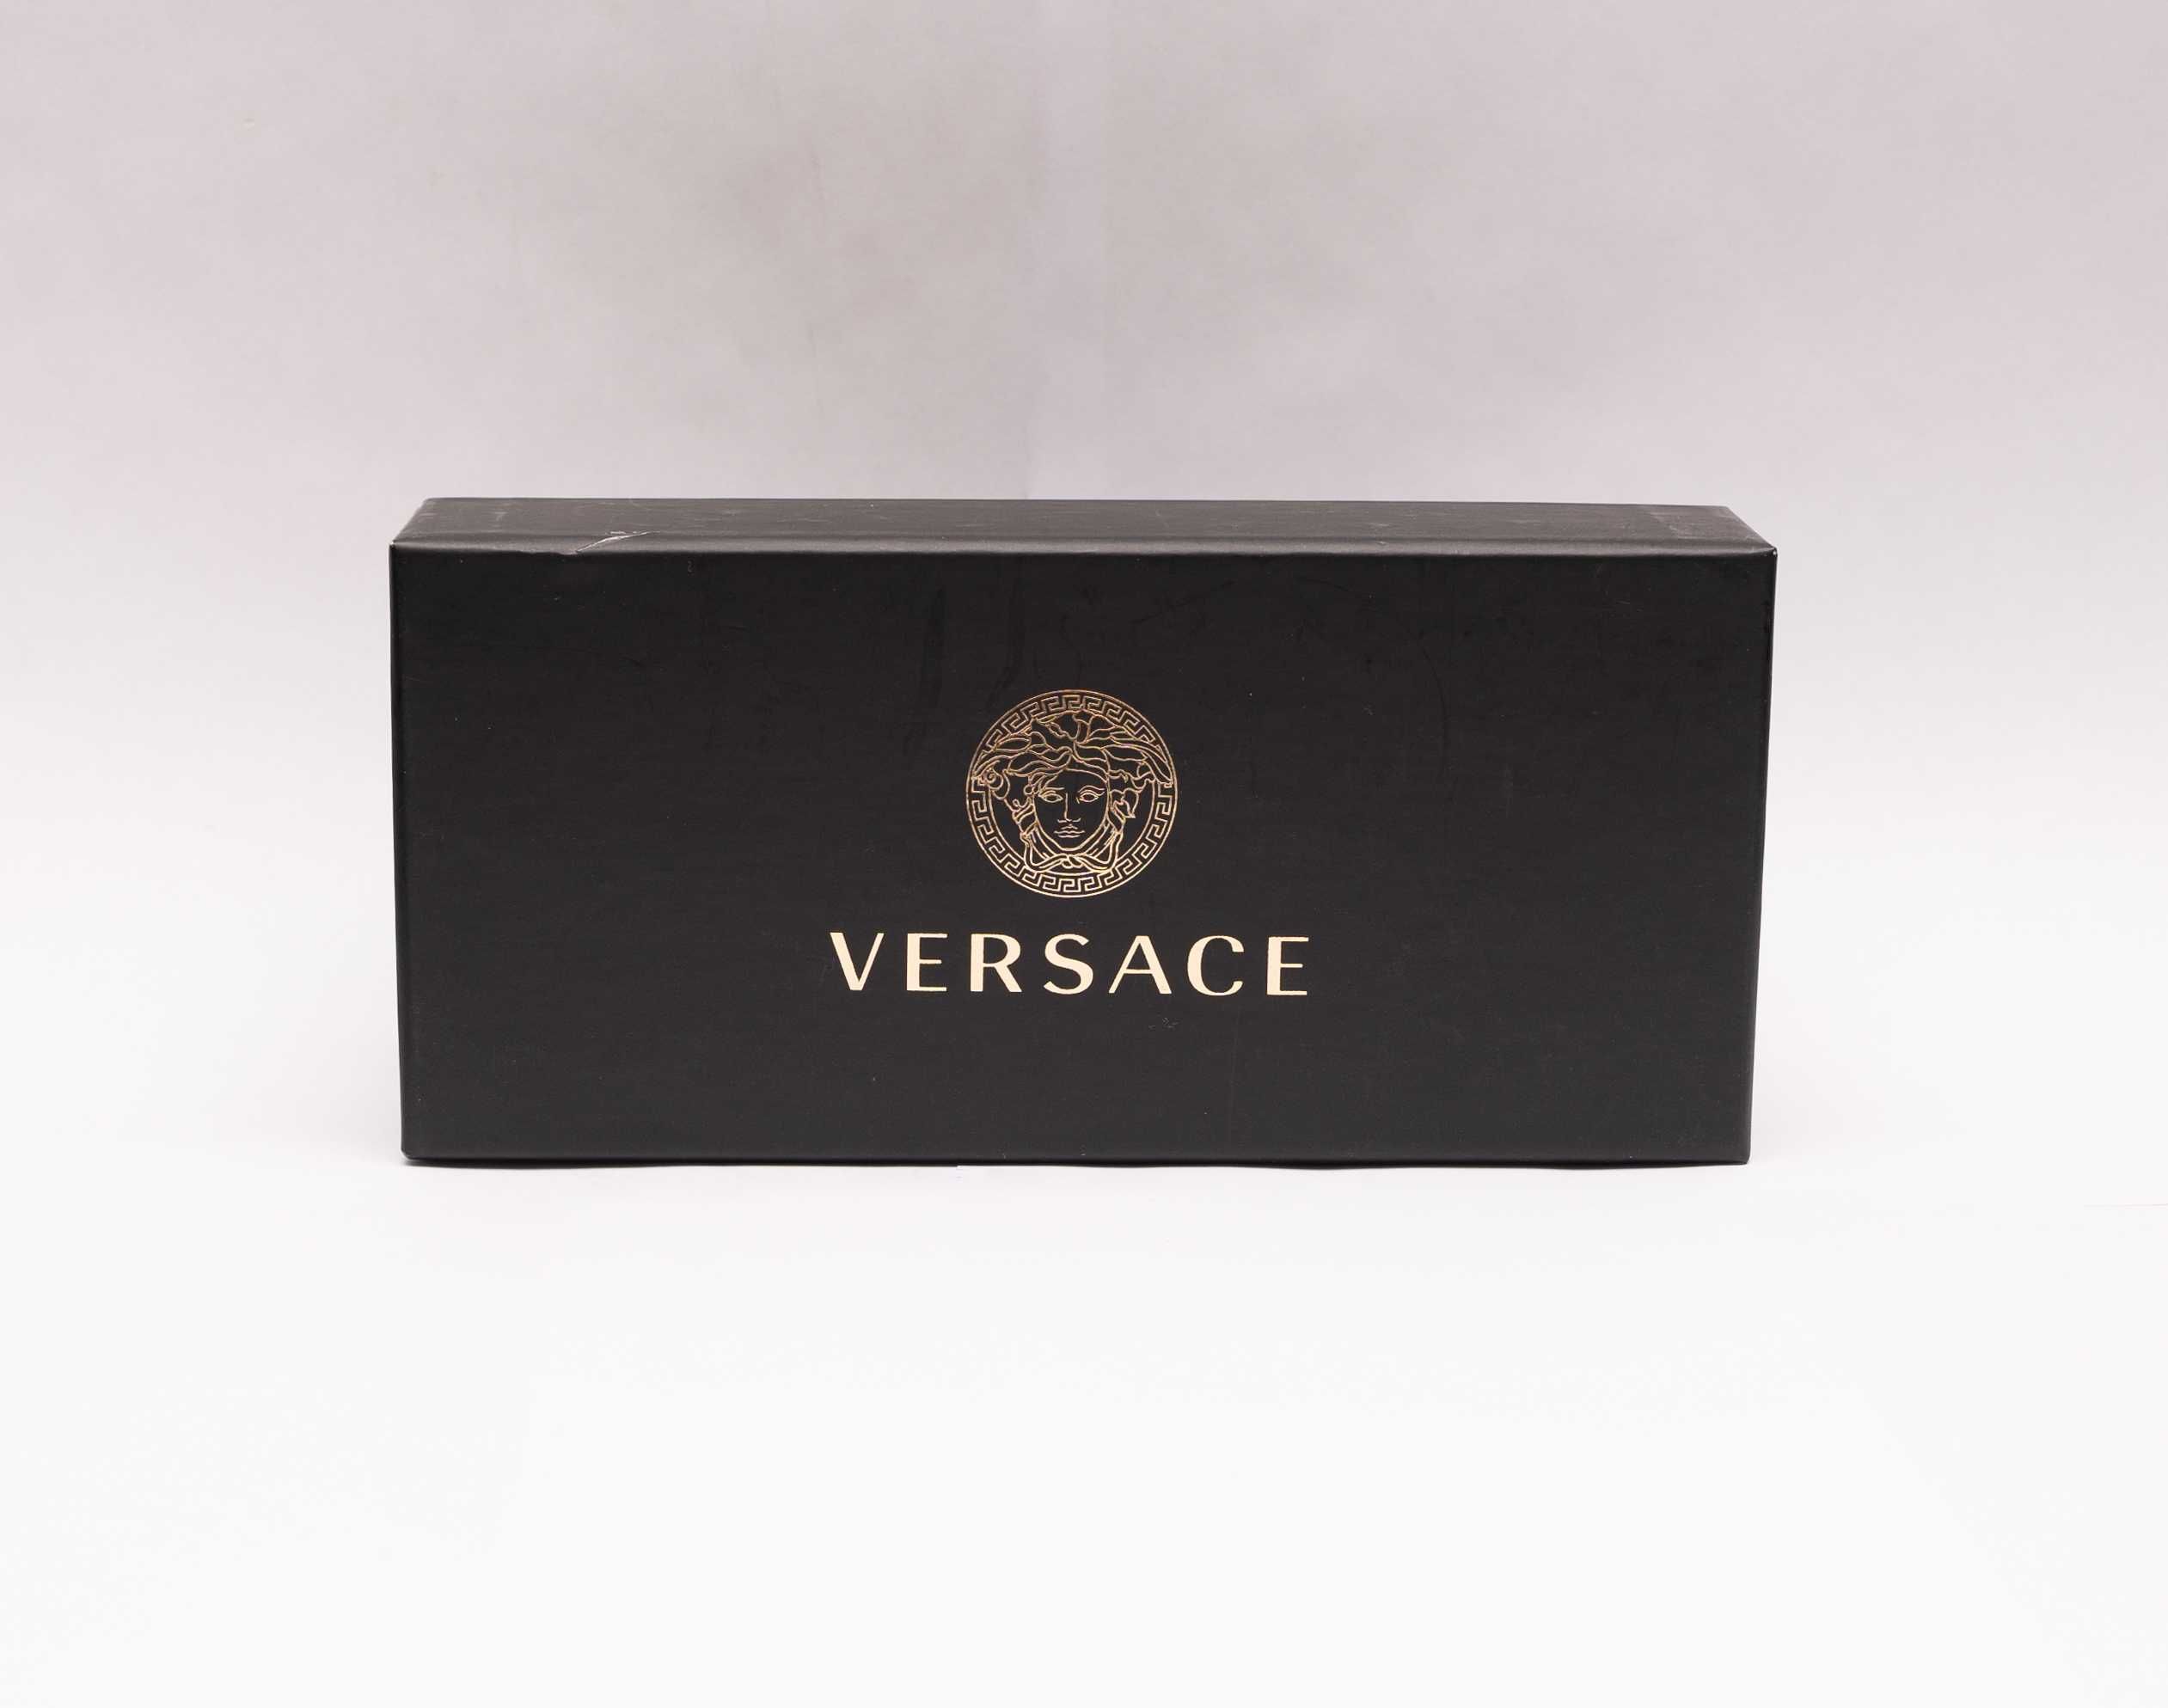 Okulary Versace oprawki korekcyjne złoto-fioletowe damskie